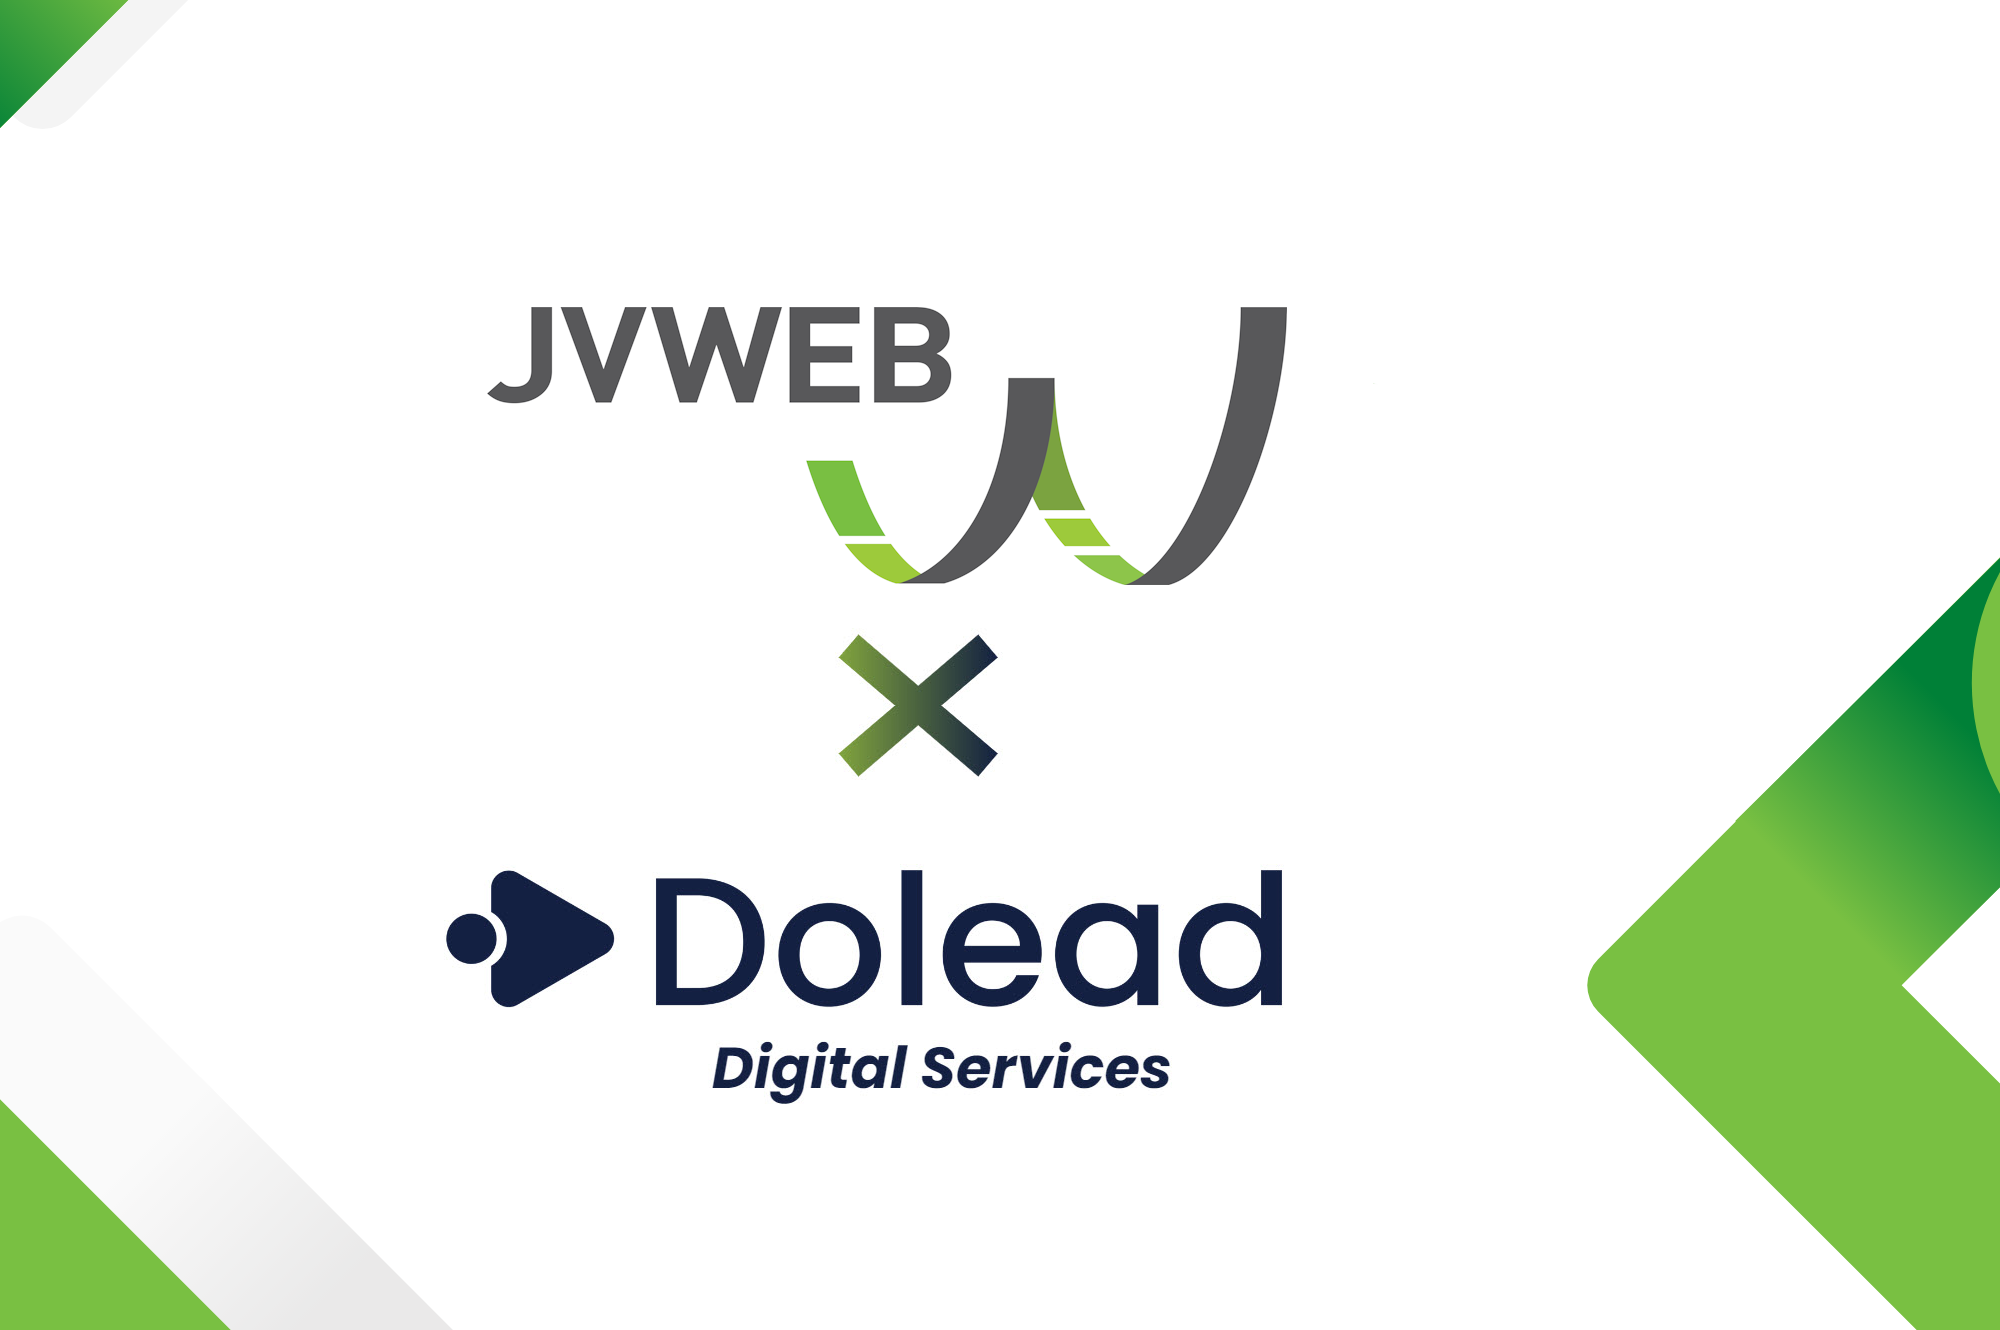 JVWEB renforce sa base clients avec l'acquisition de Dolead Digital Services, agence media spécialisée dans la gestion de campagnes publicitaires